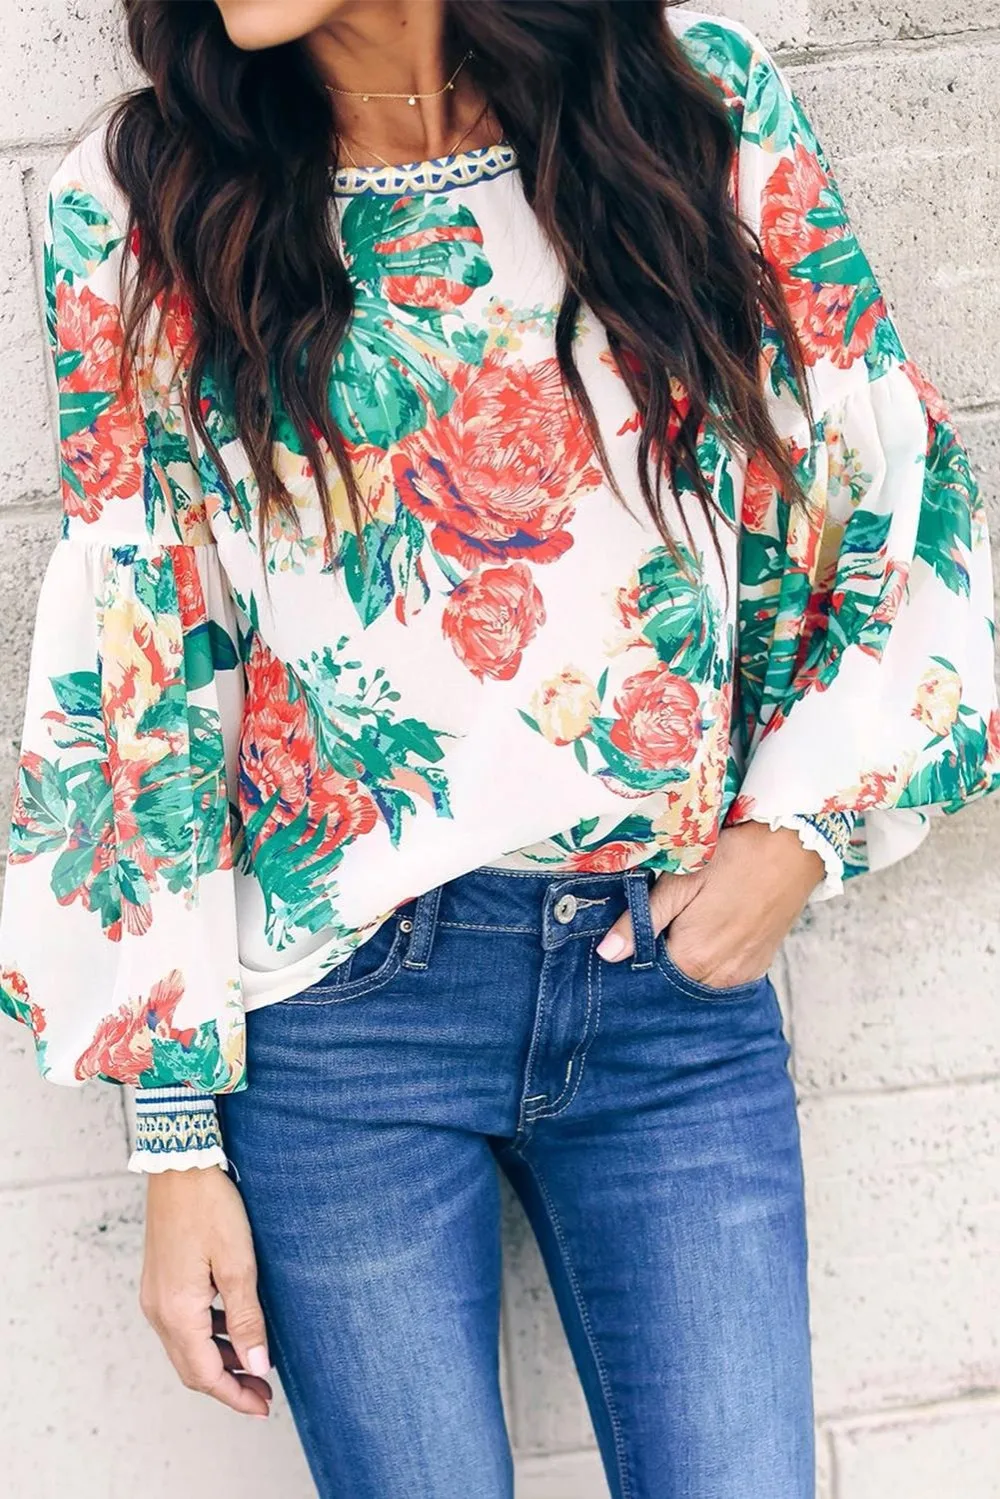 Многоцветная блузка с цветочным принтом, Женская Длинная блузка с широкими рукавами и глубоким вырезом на спине, с замочком, на пуговицах, блузка, топ, плюс размер